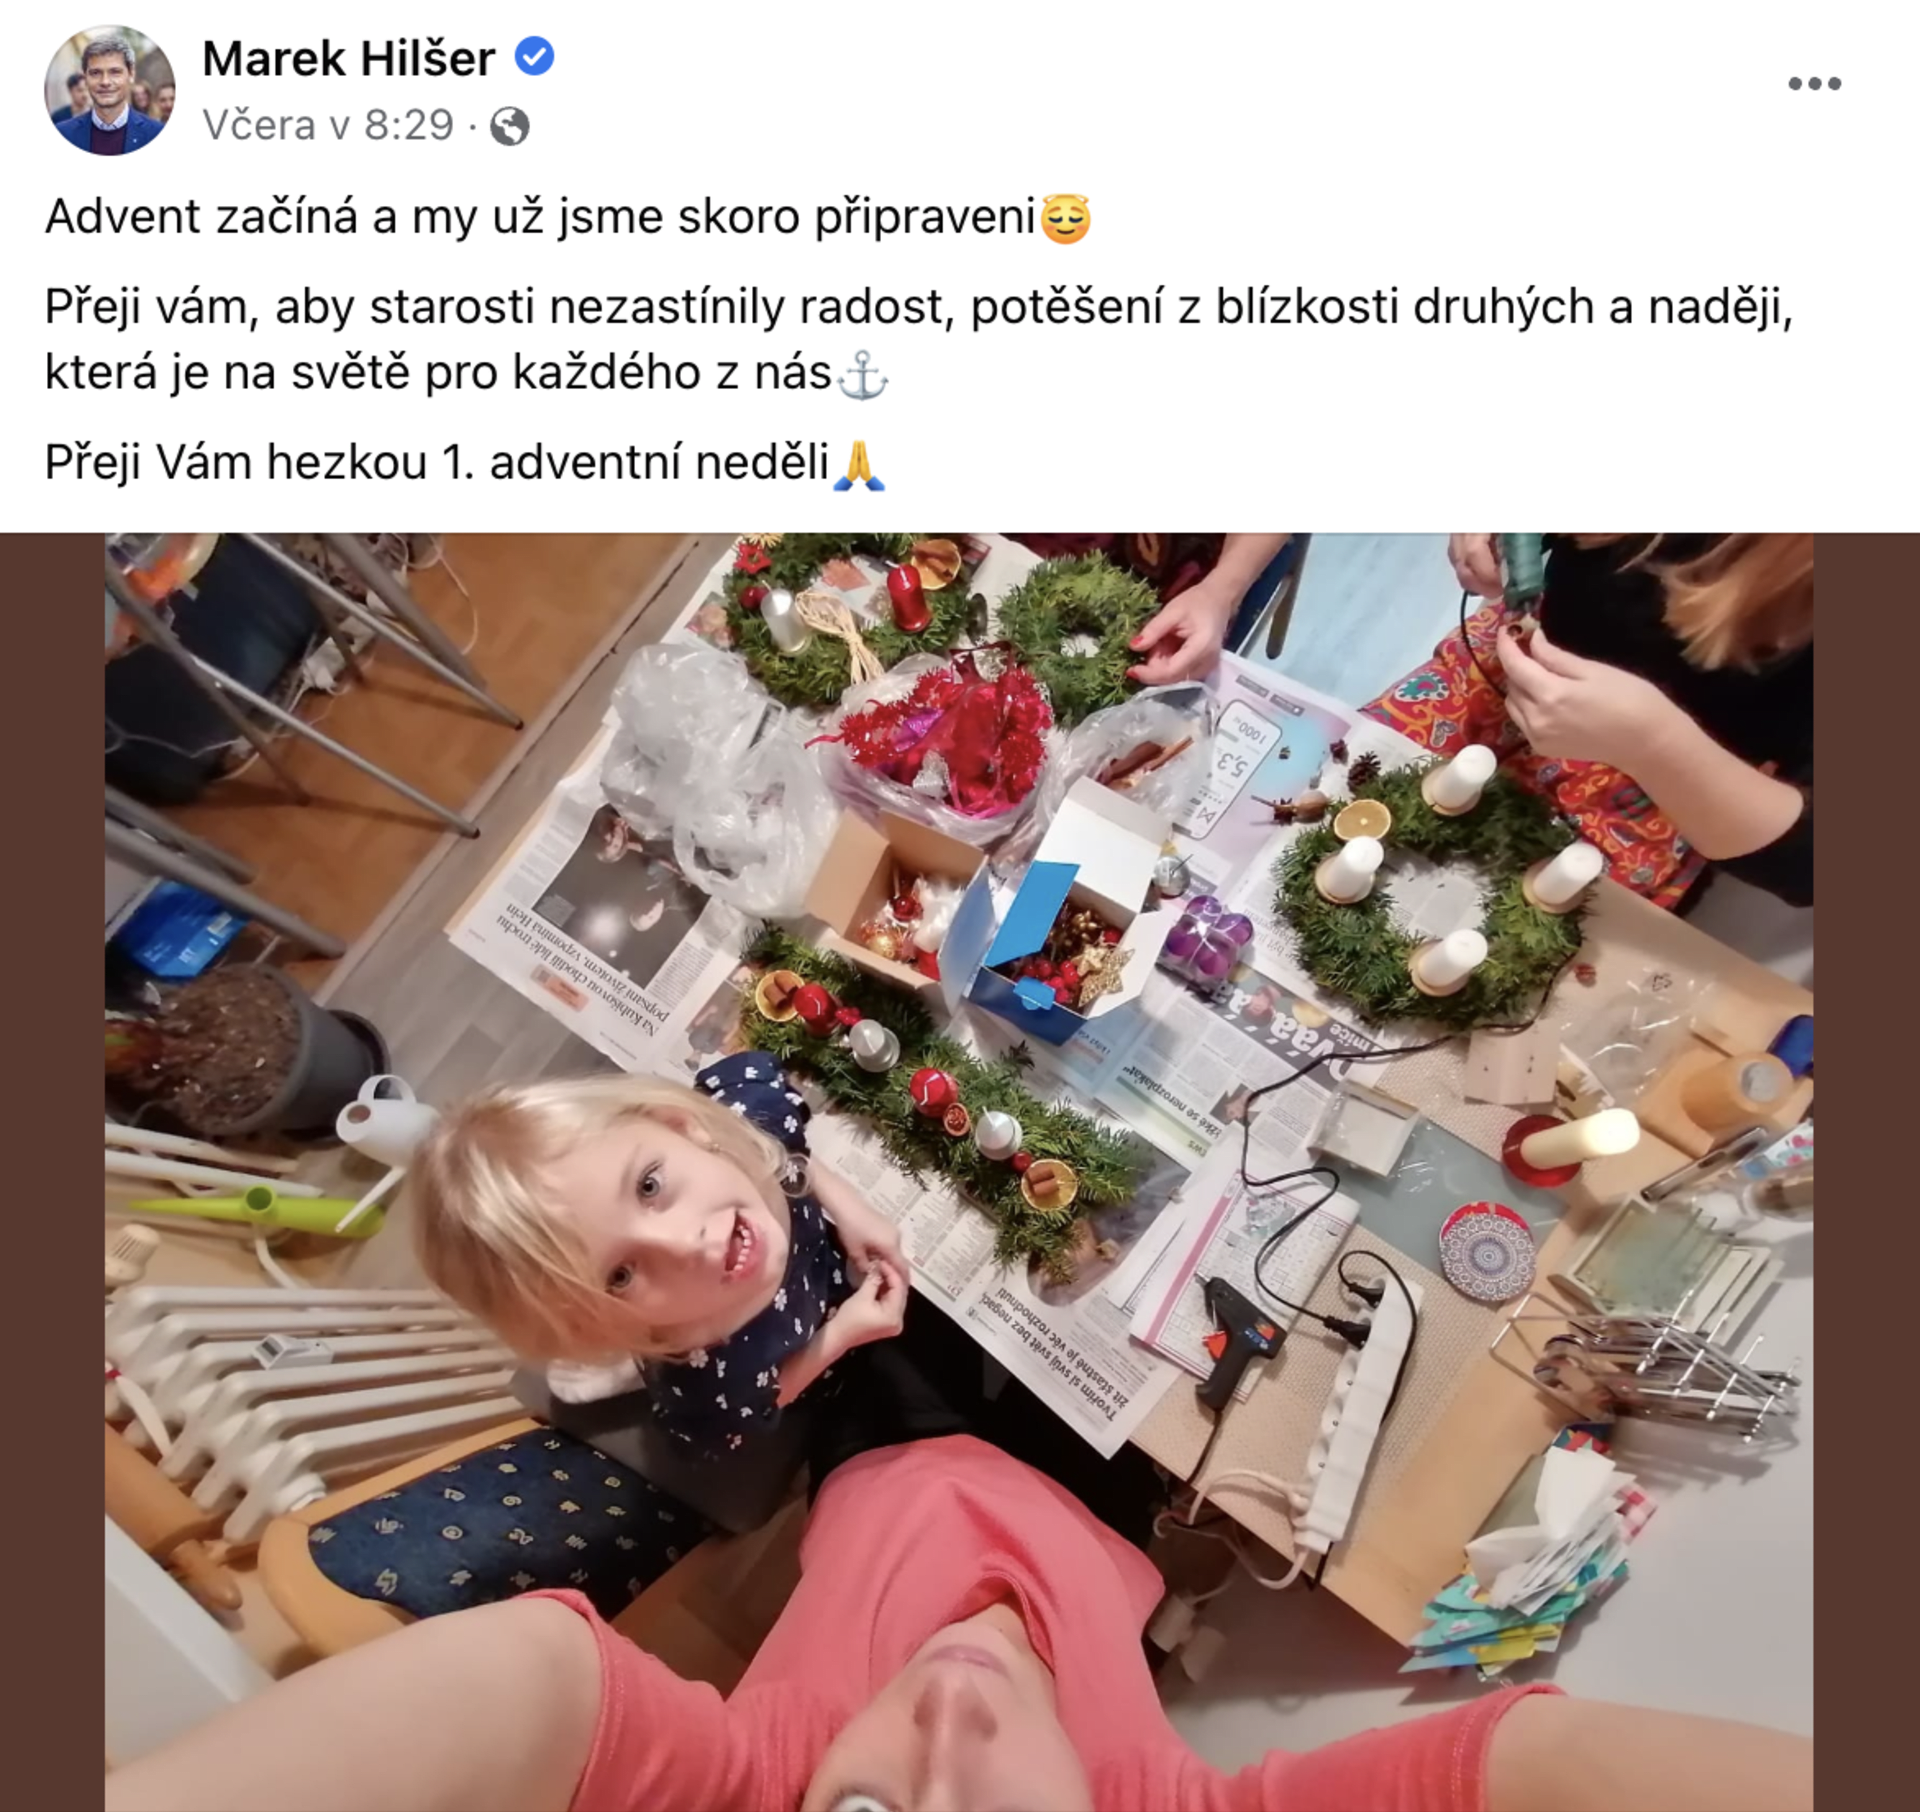 Fotky své rodiny na sociálních sítích často sdílí i Marek Hilšer.